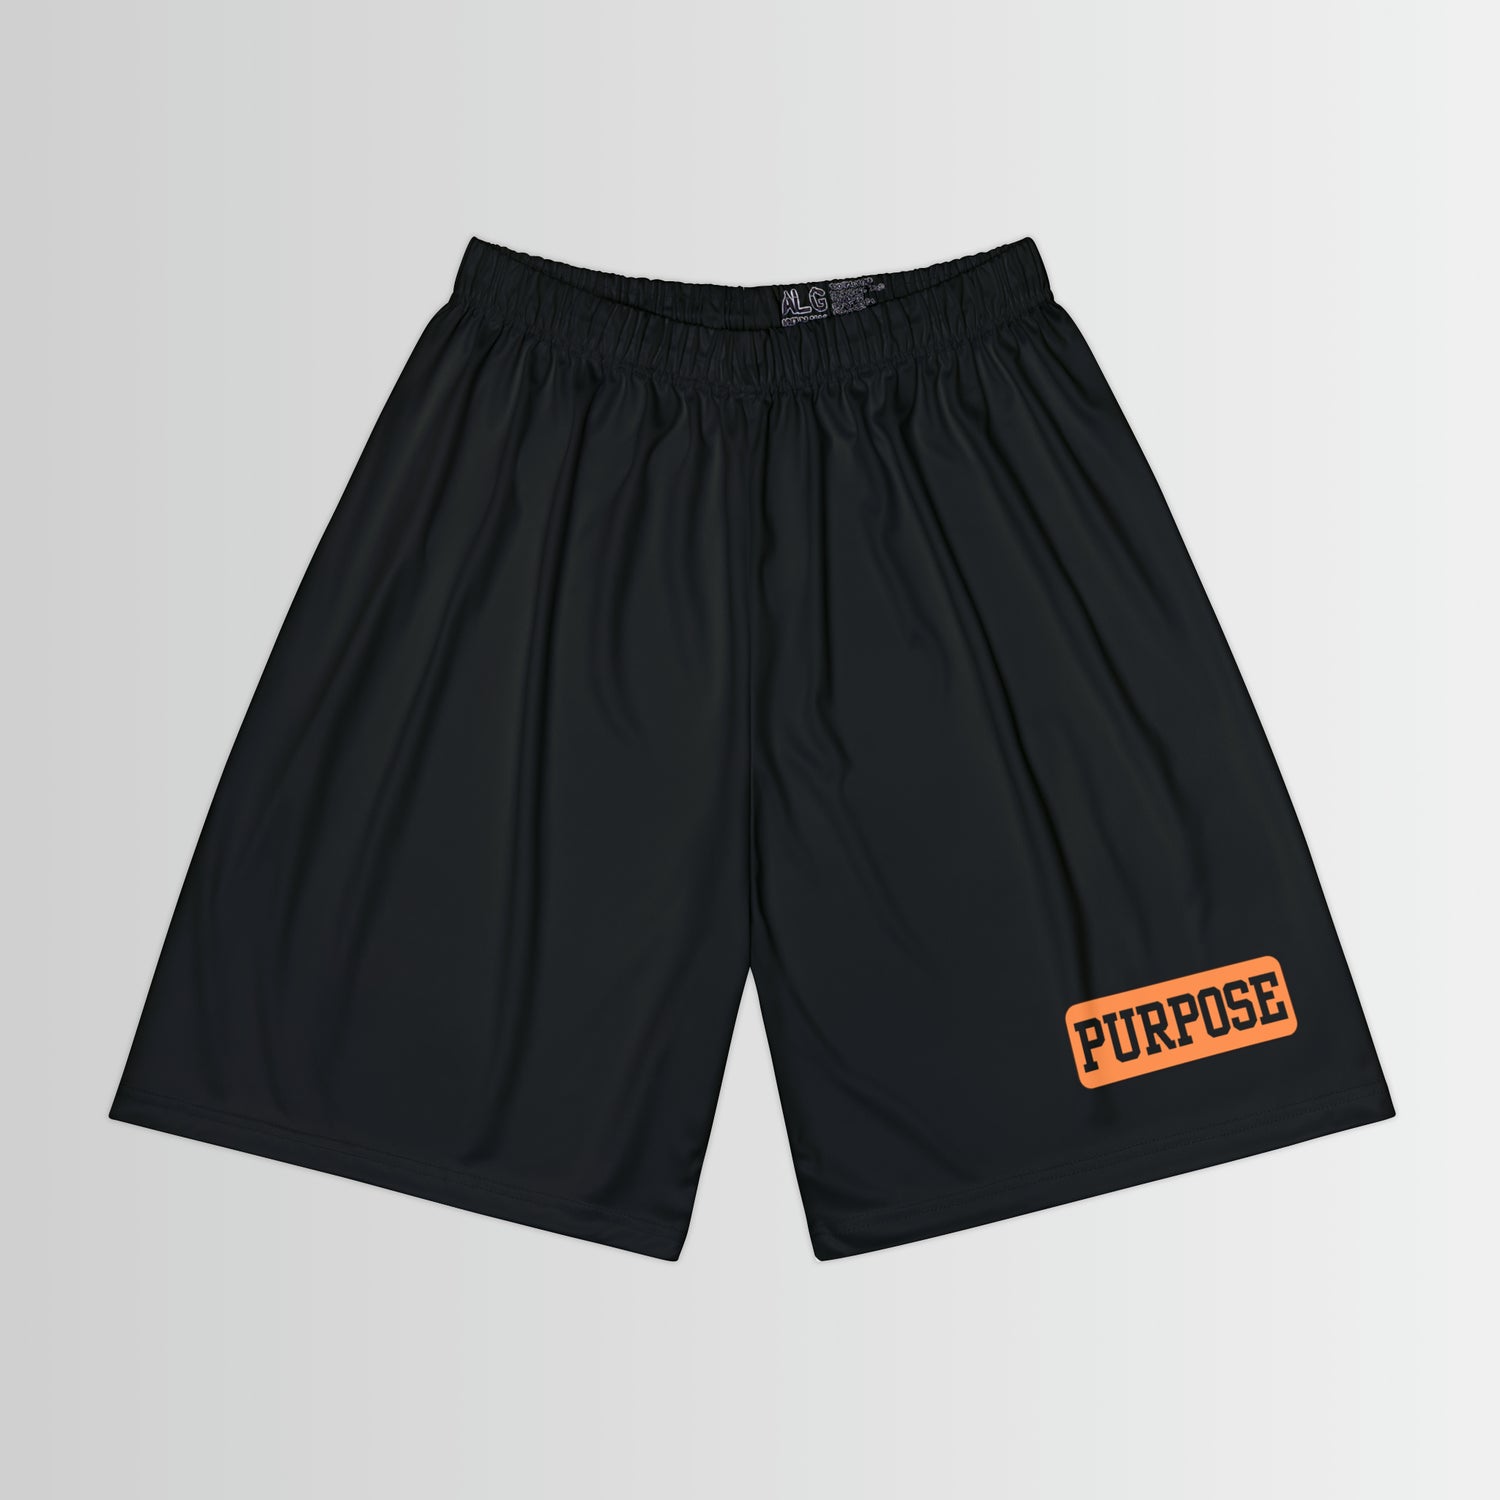 Purpose - Men’s Sports Shorts - Black